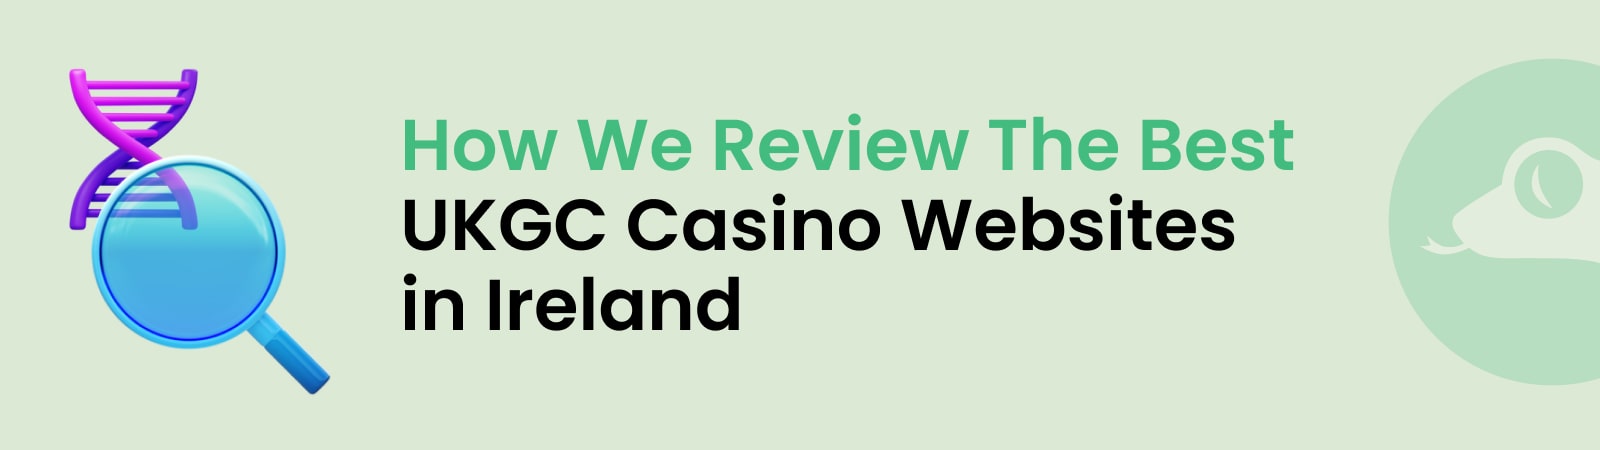 review the best ukgc casino websites in ireland